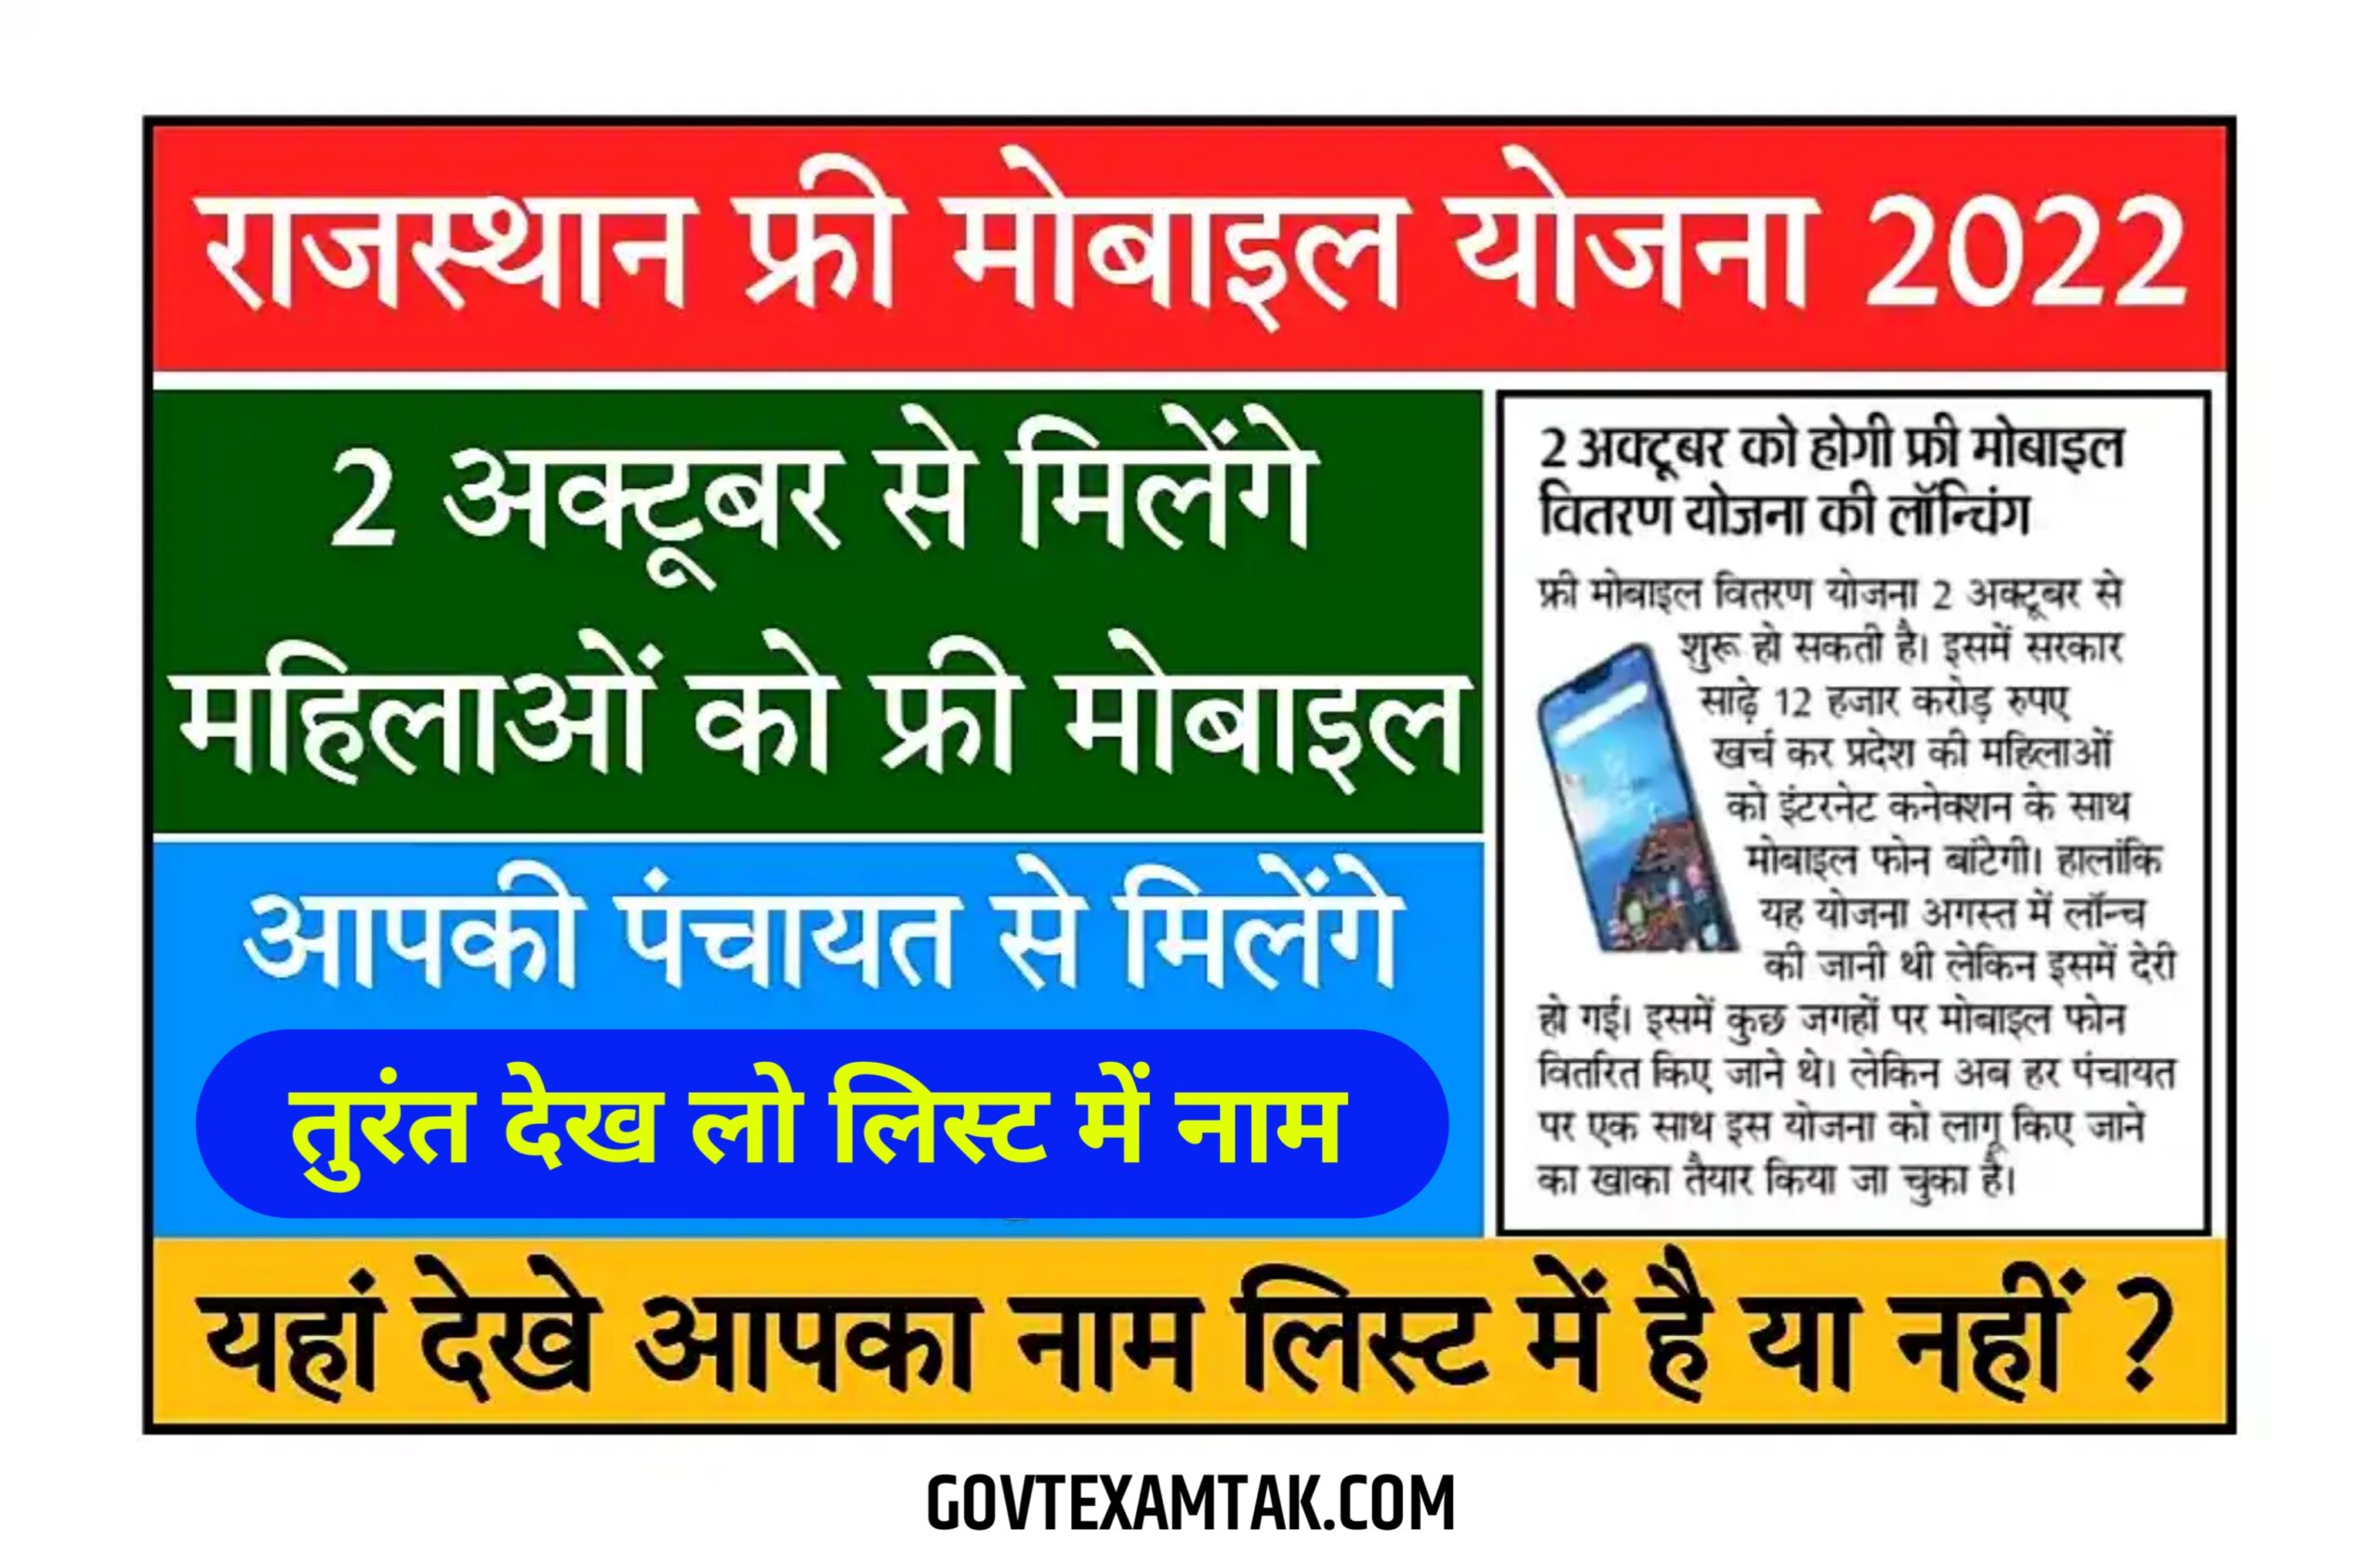 Rajasthan Free Mobile Yojana 2022 महिलाओं को मिलेंगे फ्री स्मार्टफोन जिसमें 3 साल तक फ्री नेट, कब मिलेंगे यहां से देखें